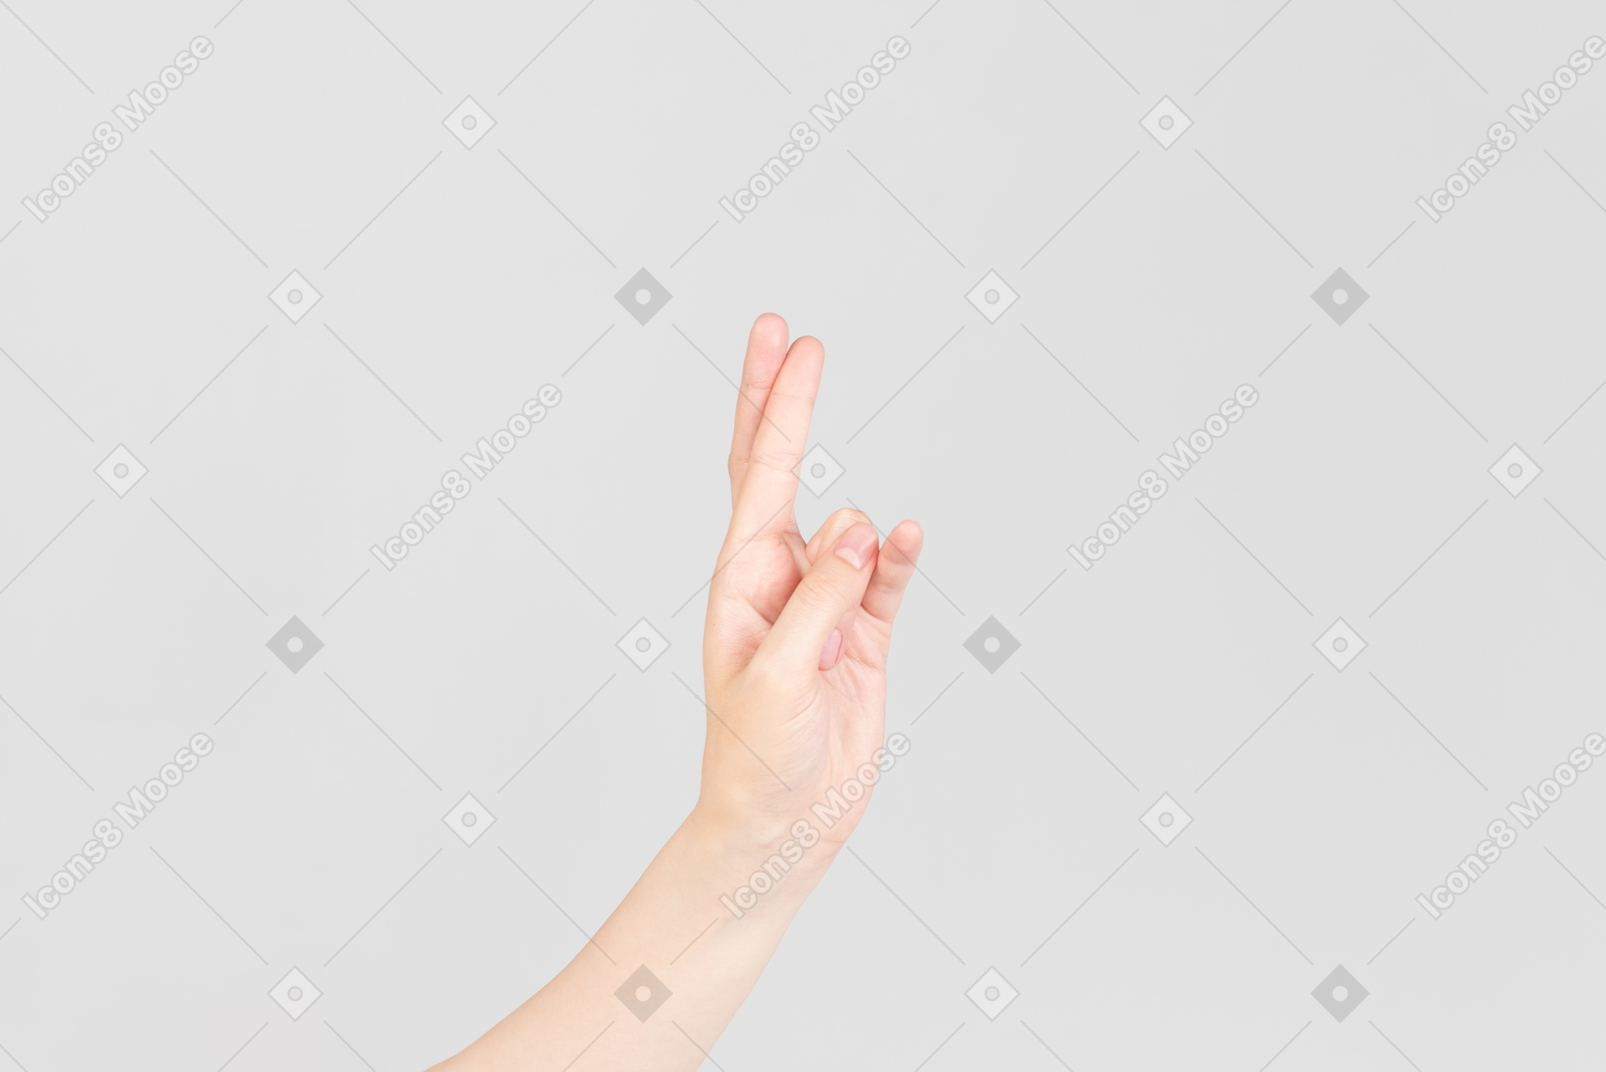 Sguardo laterale della mano femminile che tiene le dita incrociate